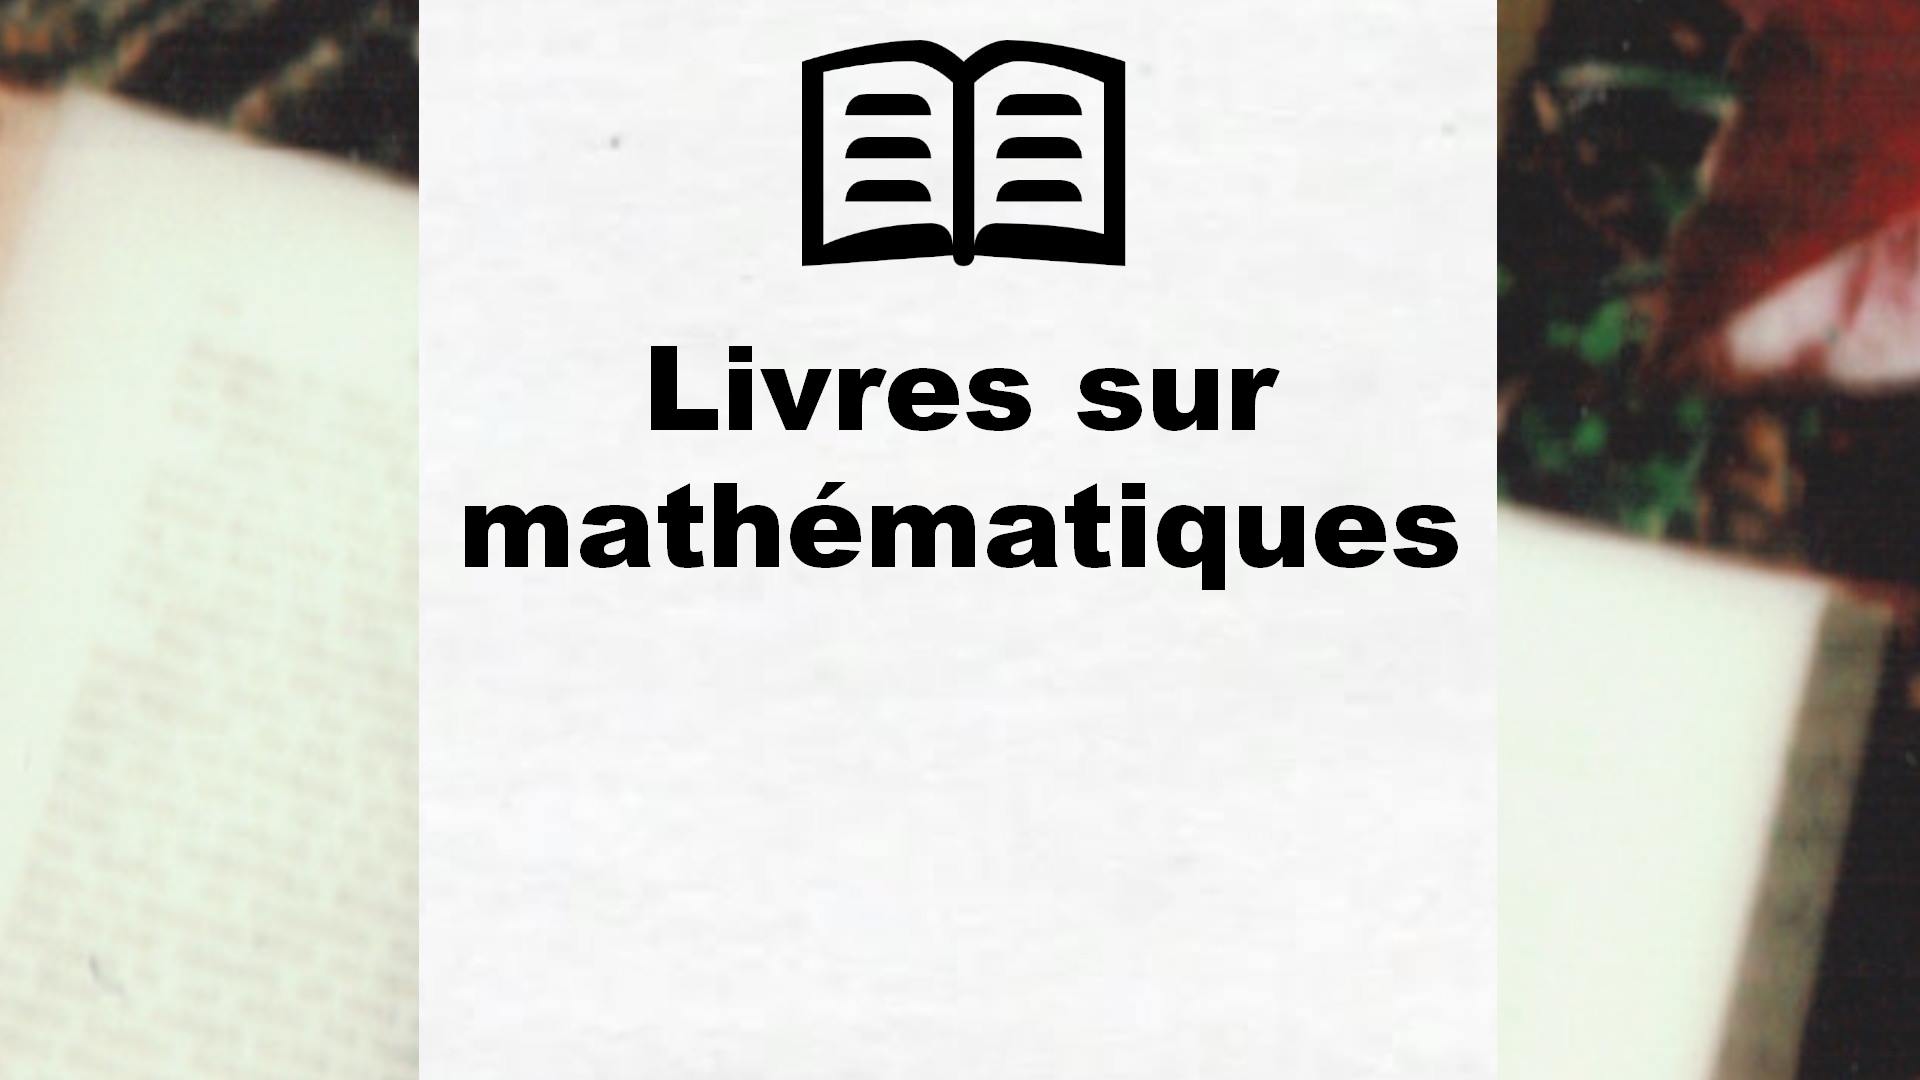 Livres sur mathématiques